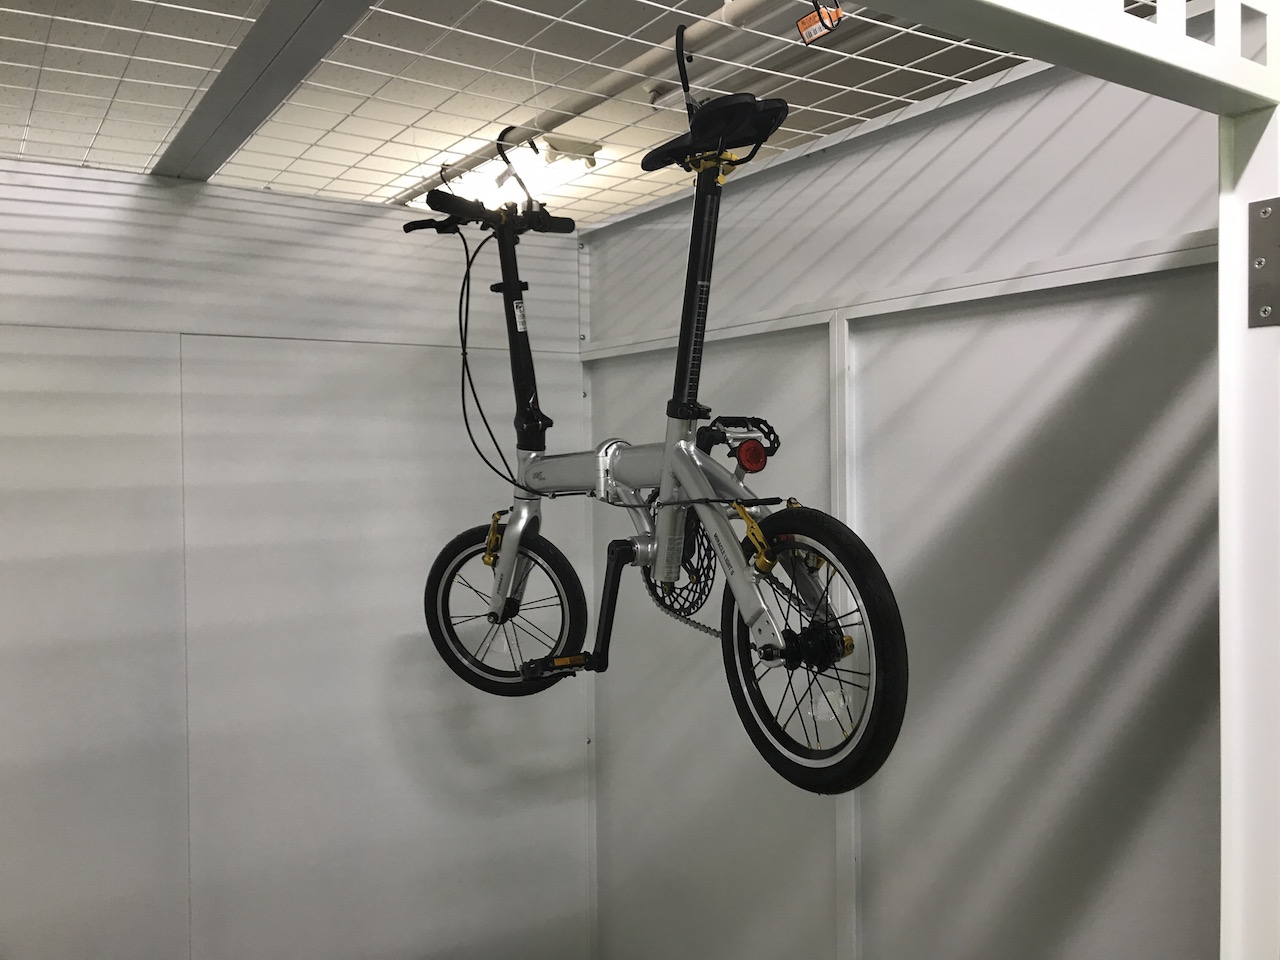 トランクルームに効率よく自転車を収納する方法 札幌のトランクルームならシロクマトランクへ